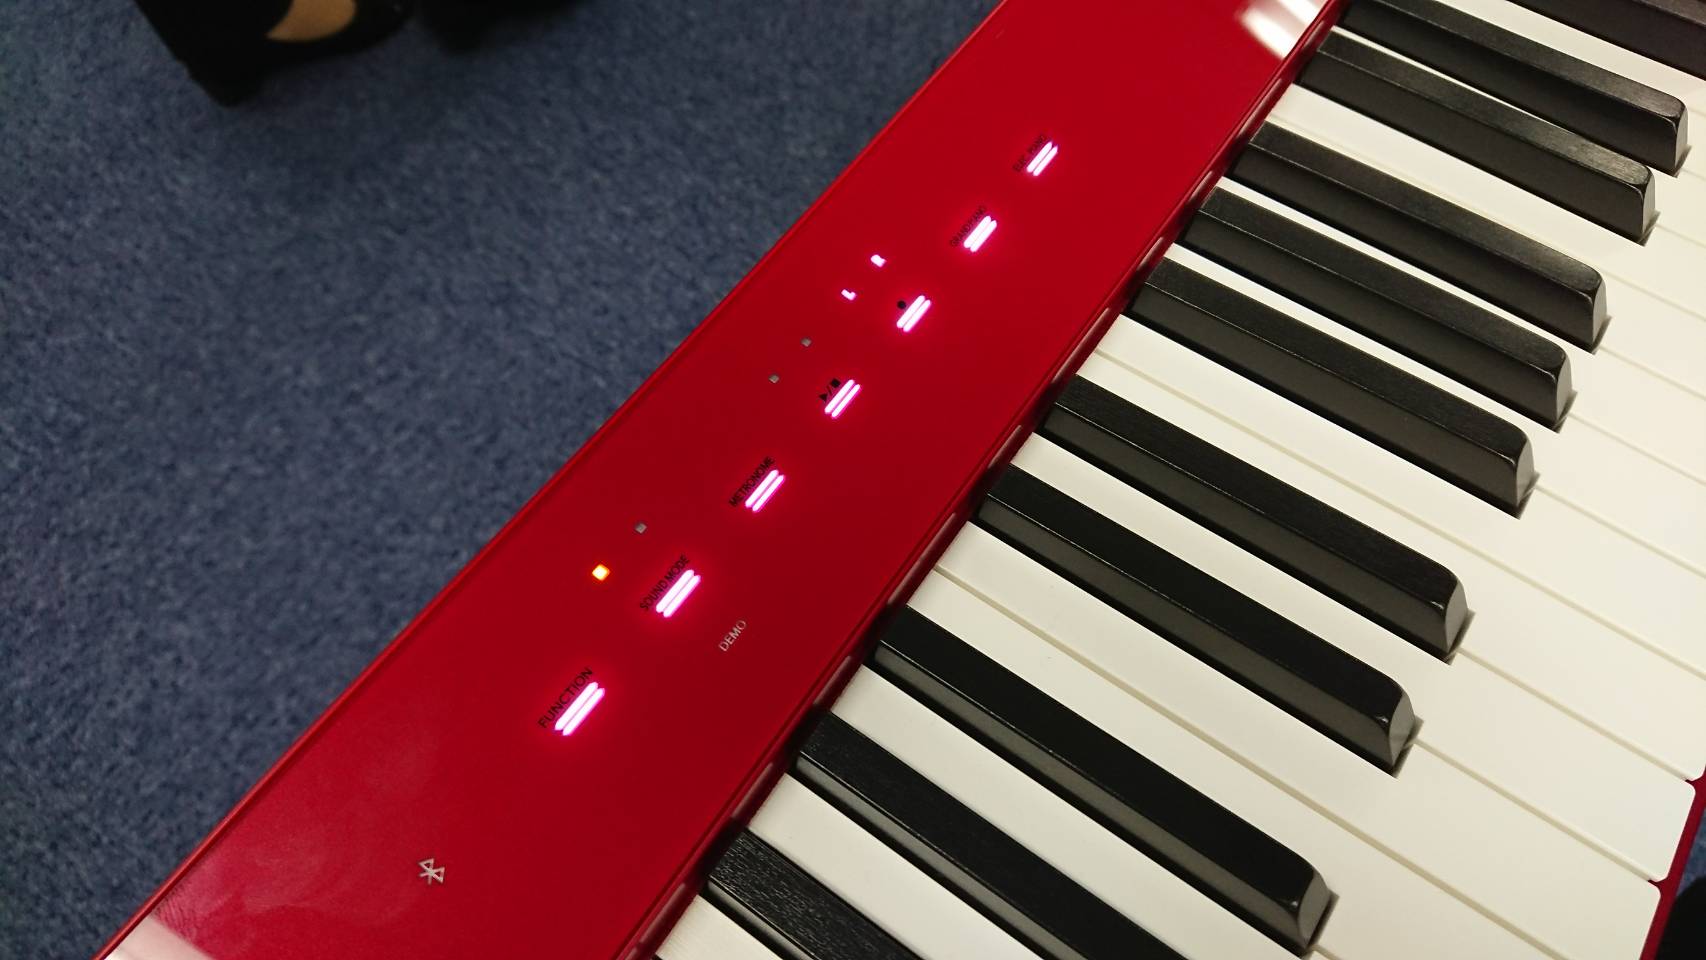 電子ピアノ Newカラー Casio カシオ Px S1000にレッド 赤 が登場